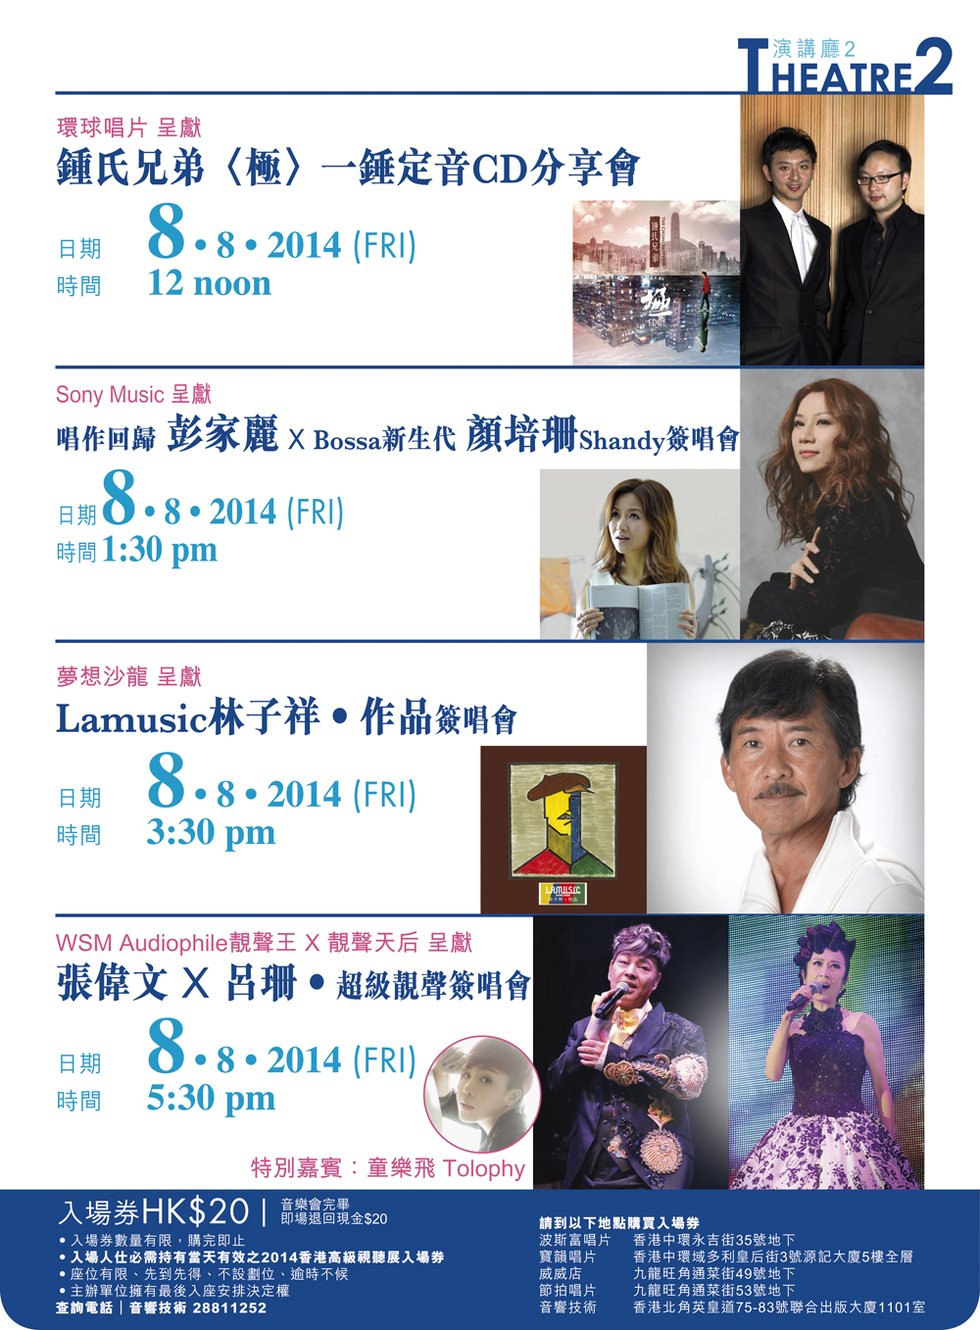 2014 香港高級視聽展 8 月 8-10 日 香港會議展覽中心舉行